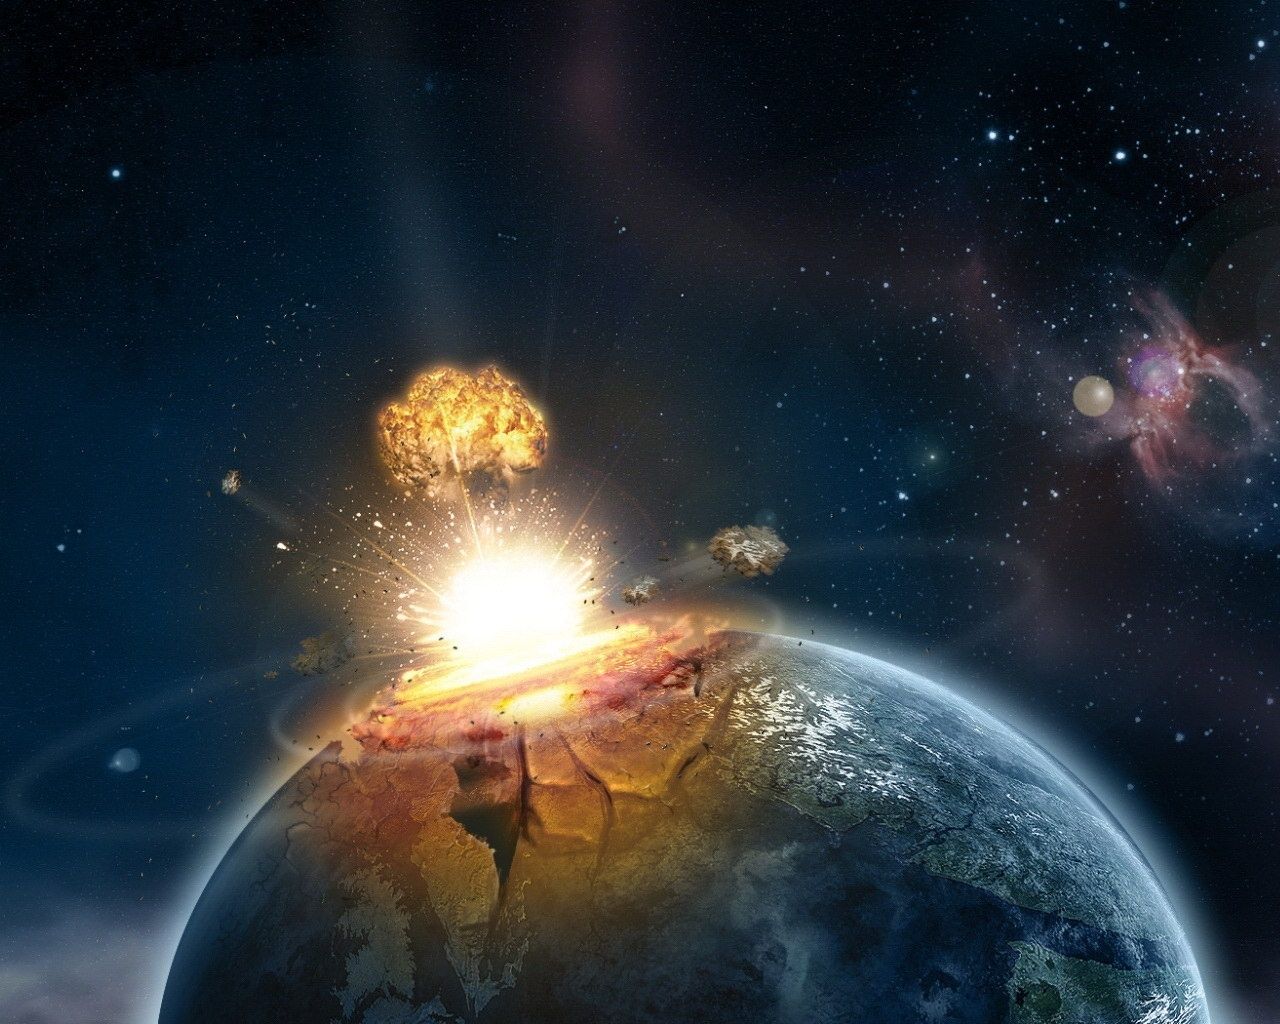 asteroid-impact_zpsawgnyn17.jpg